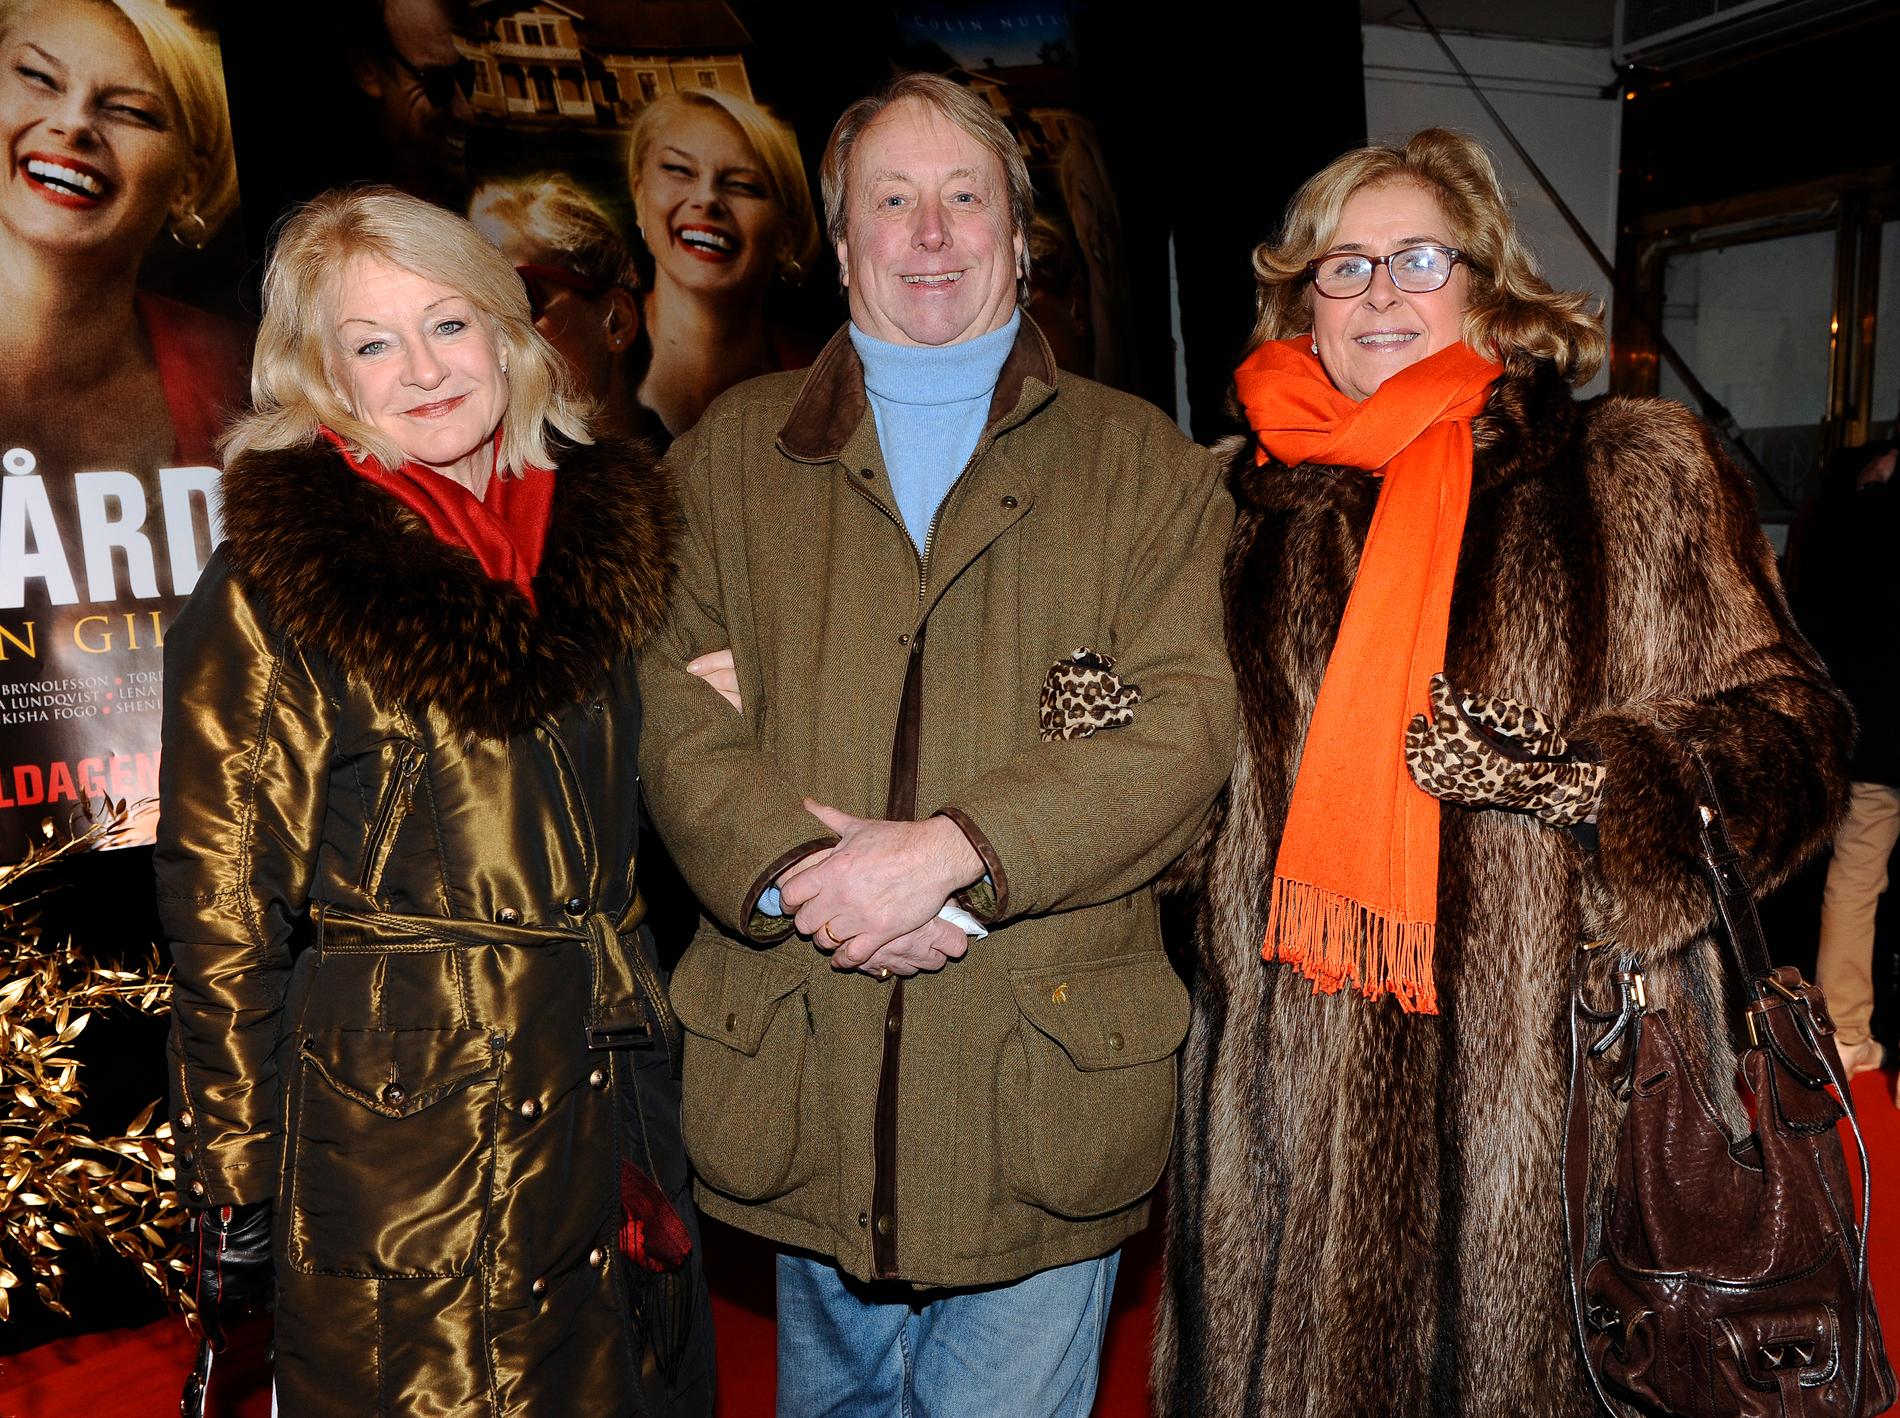 Teaterproducenten Ingrid de Laval ute i vimlet med maken Jan de Laval och PR-konsulten och nattklubbsdrottning Alexandra Charles.